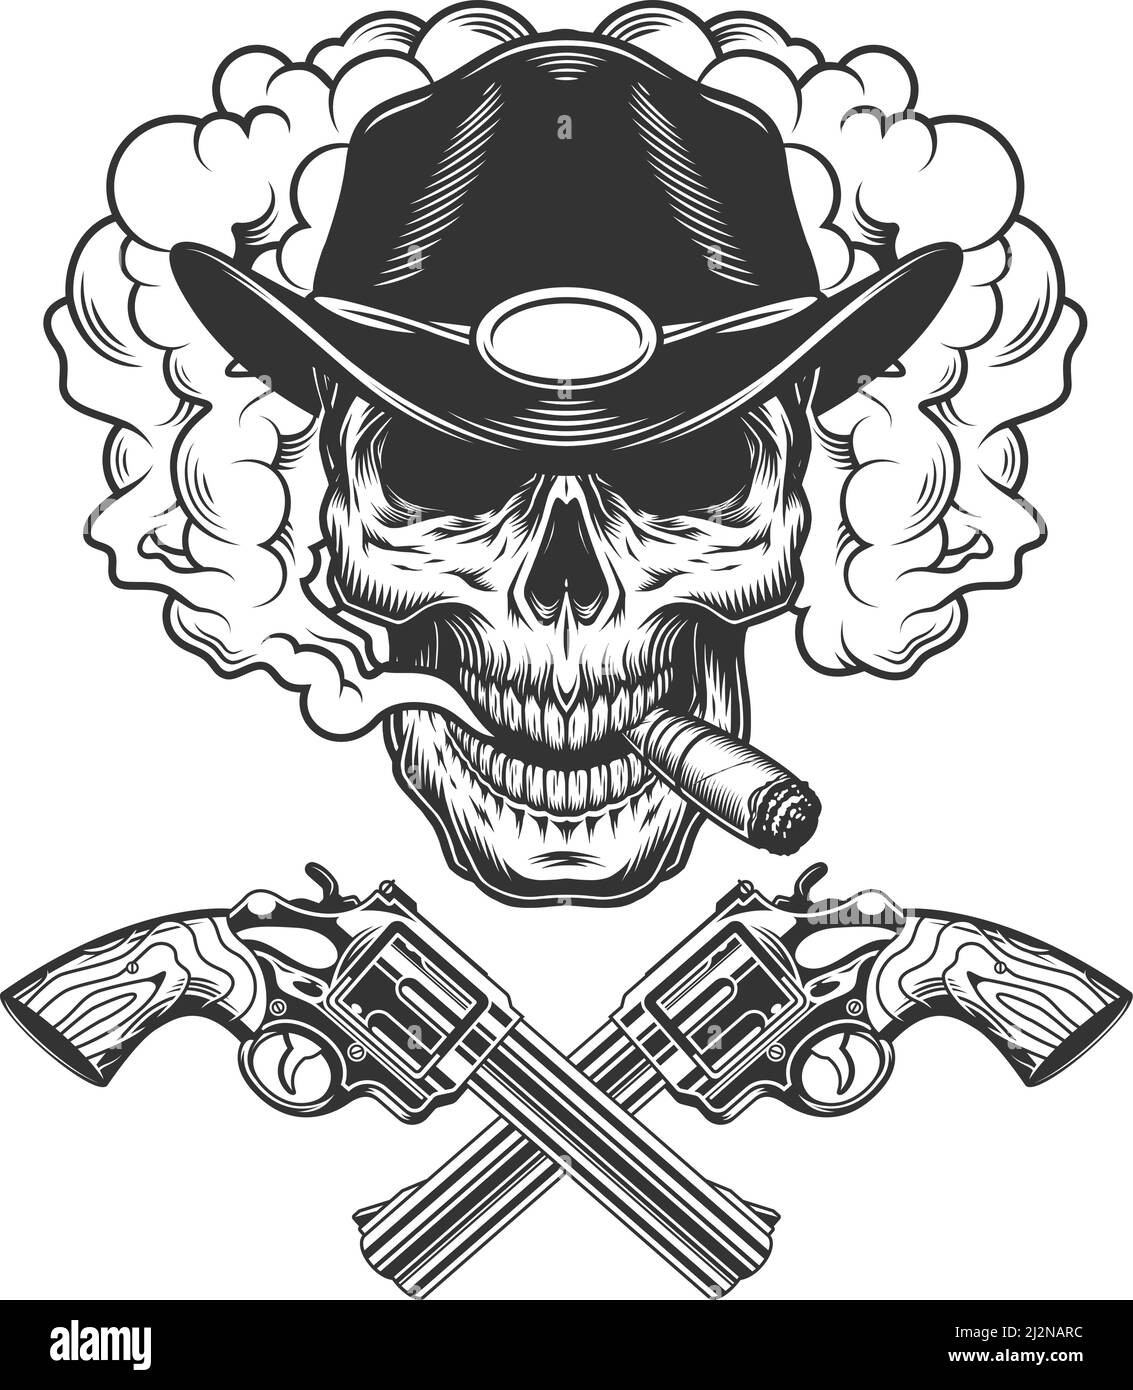 Crâne fumant cigare dans chapeau de shérif avec armes croisées dedans illustration vectorielle isolée de style monochrome vintage Illustration de Vecteur